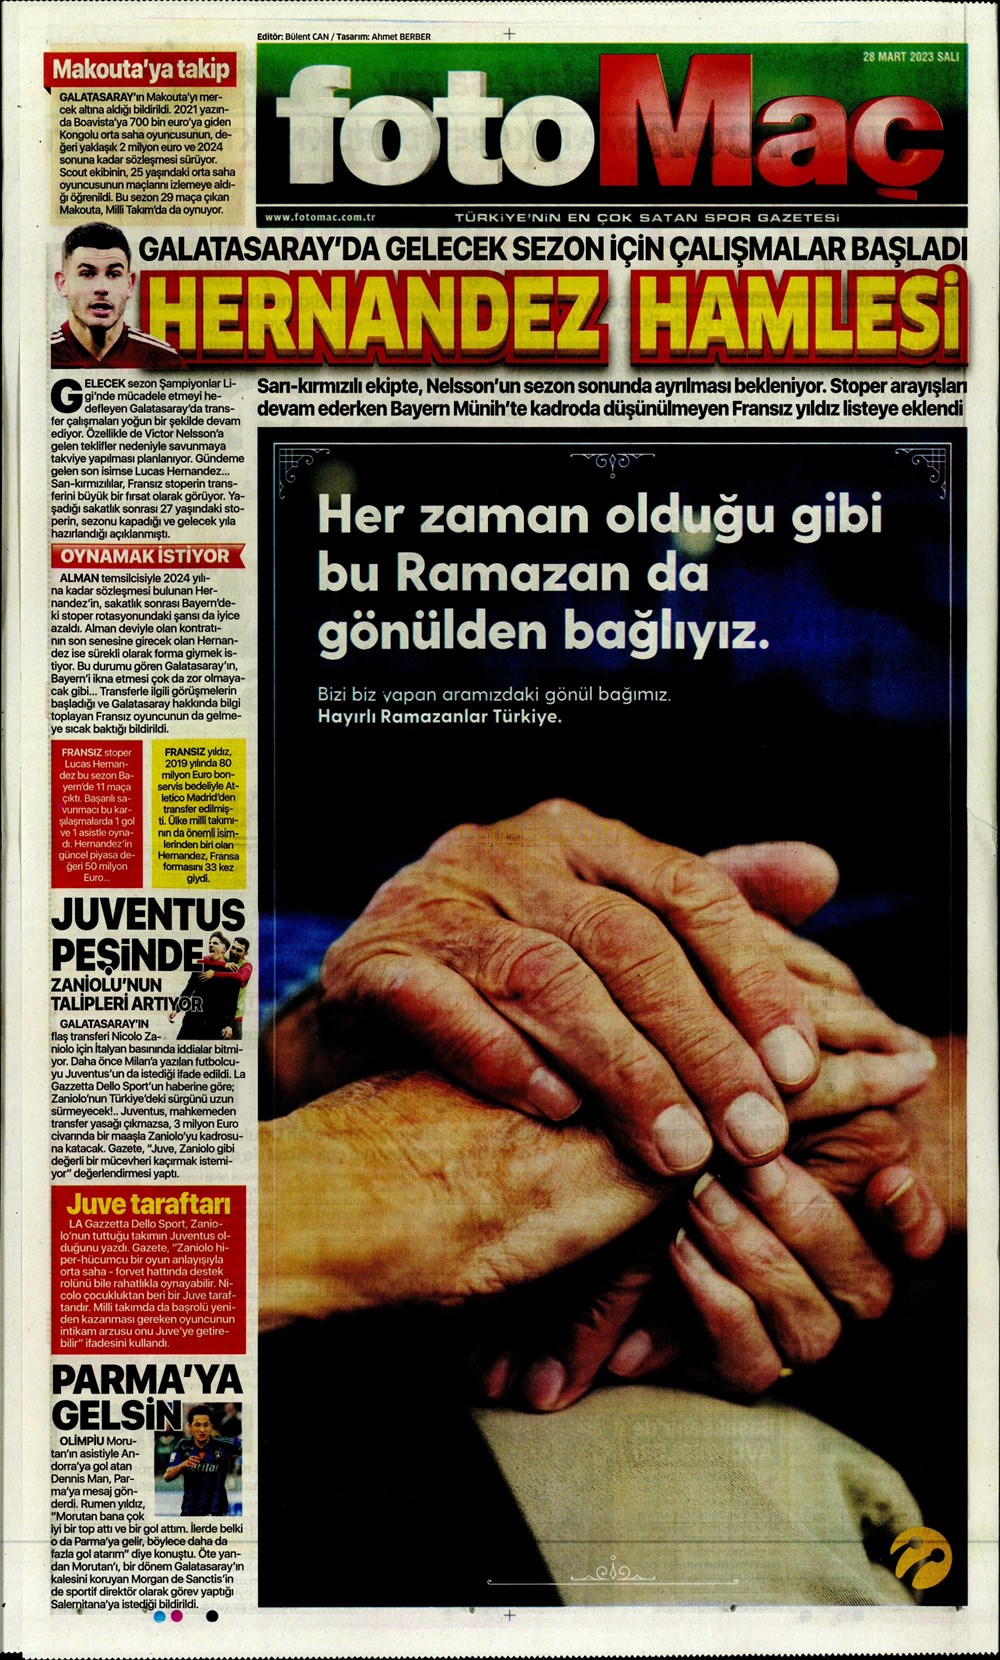 "Vurduğumuz gol olsun" - Sporun manşetleri - 17. Foto